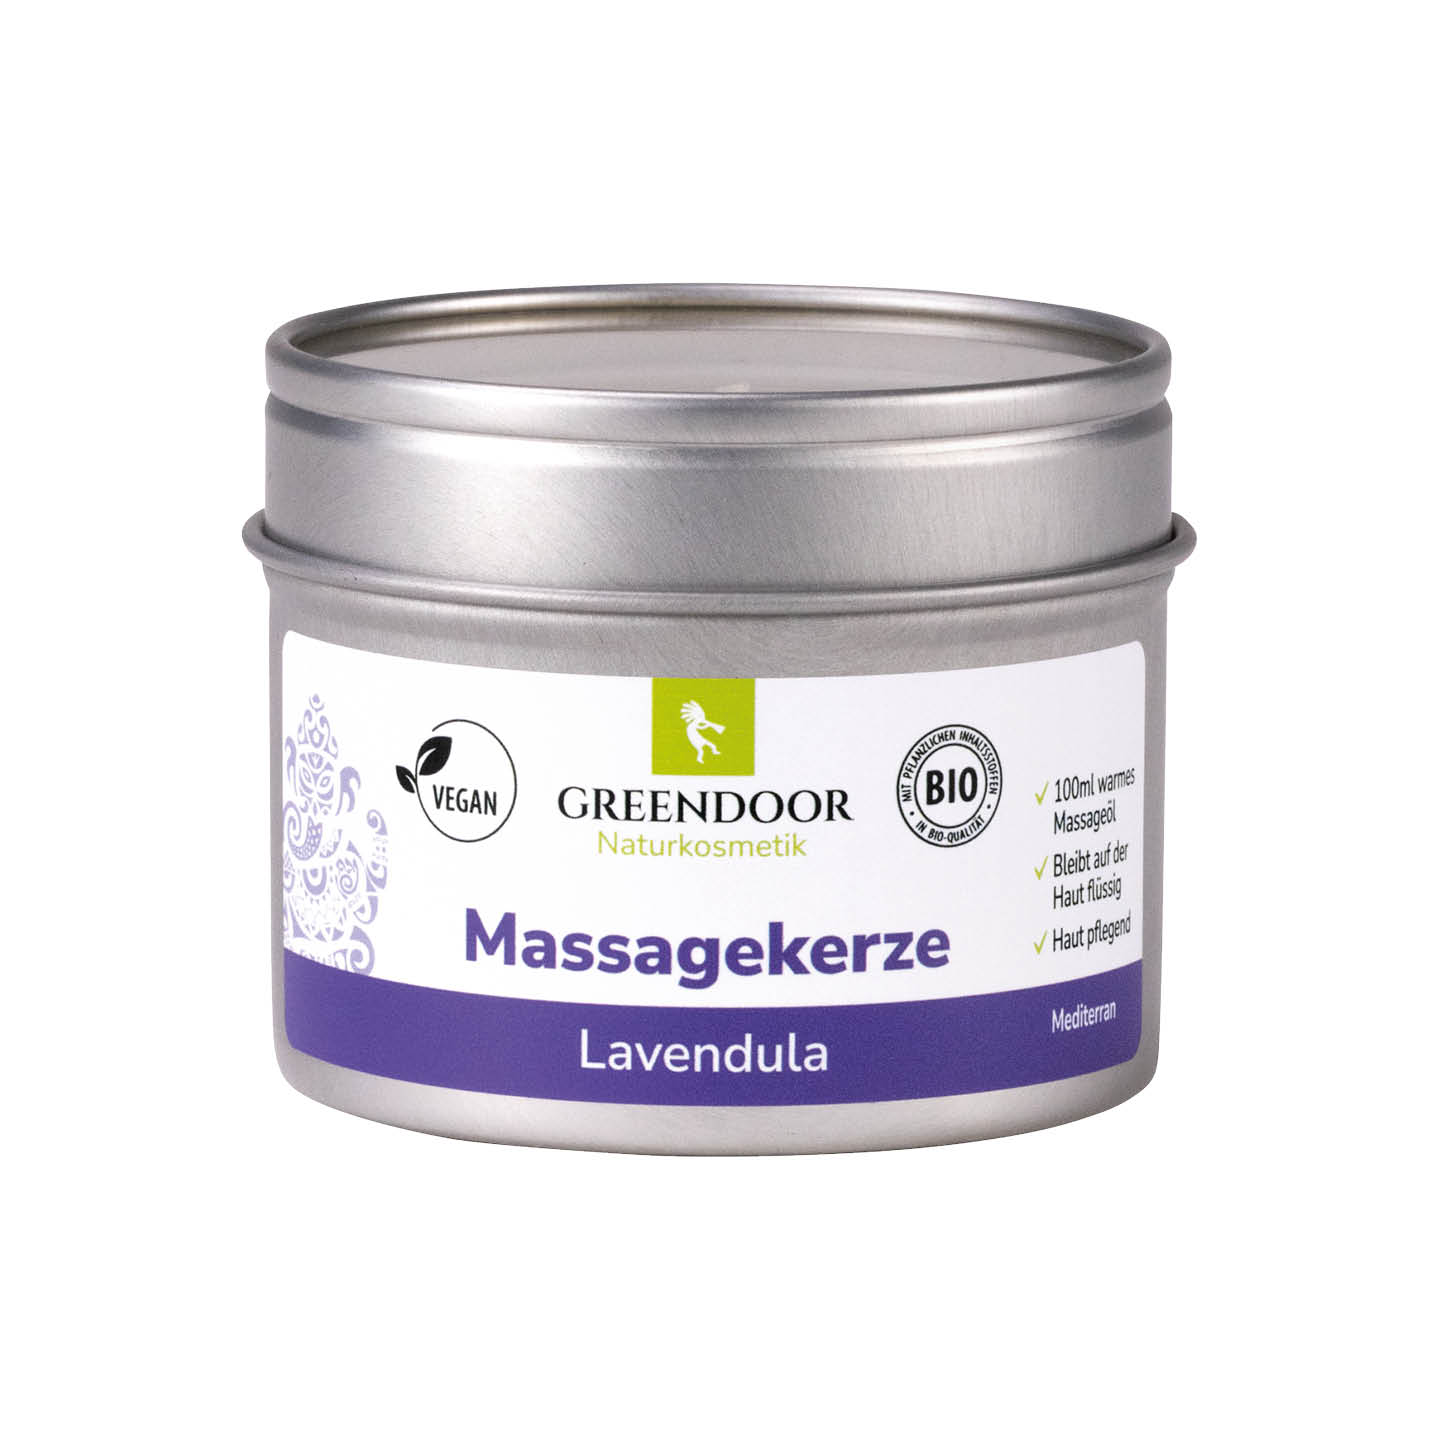 Massagekerze Lavendula 100ml, vegan, entspannend, beruhigend, Aromatherapie